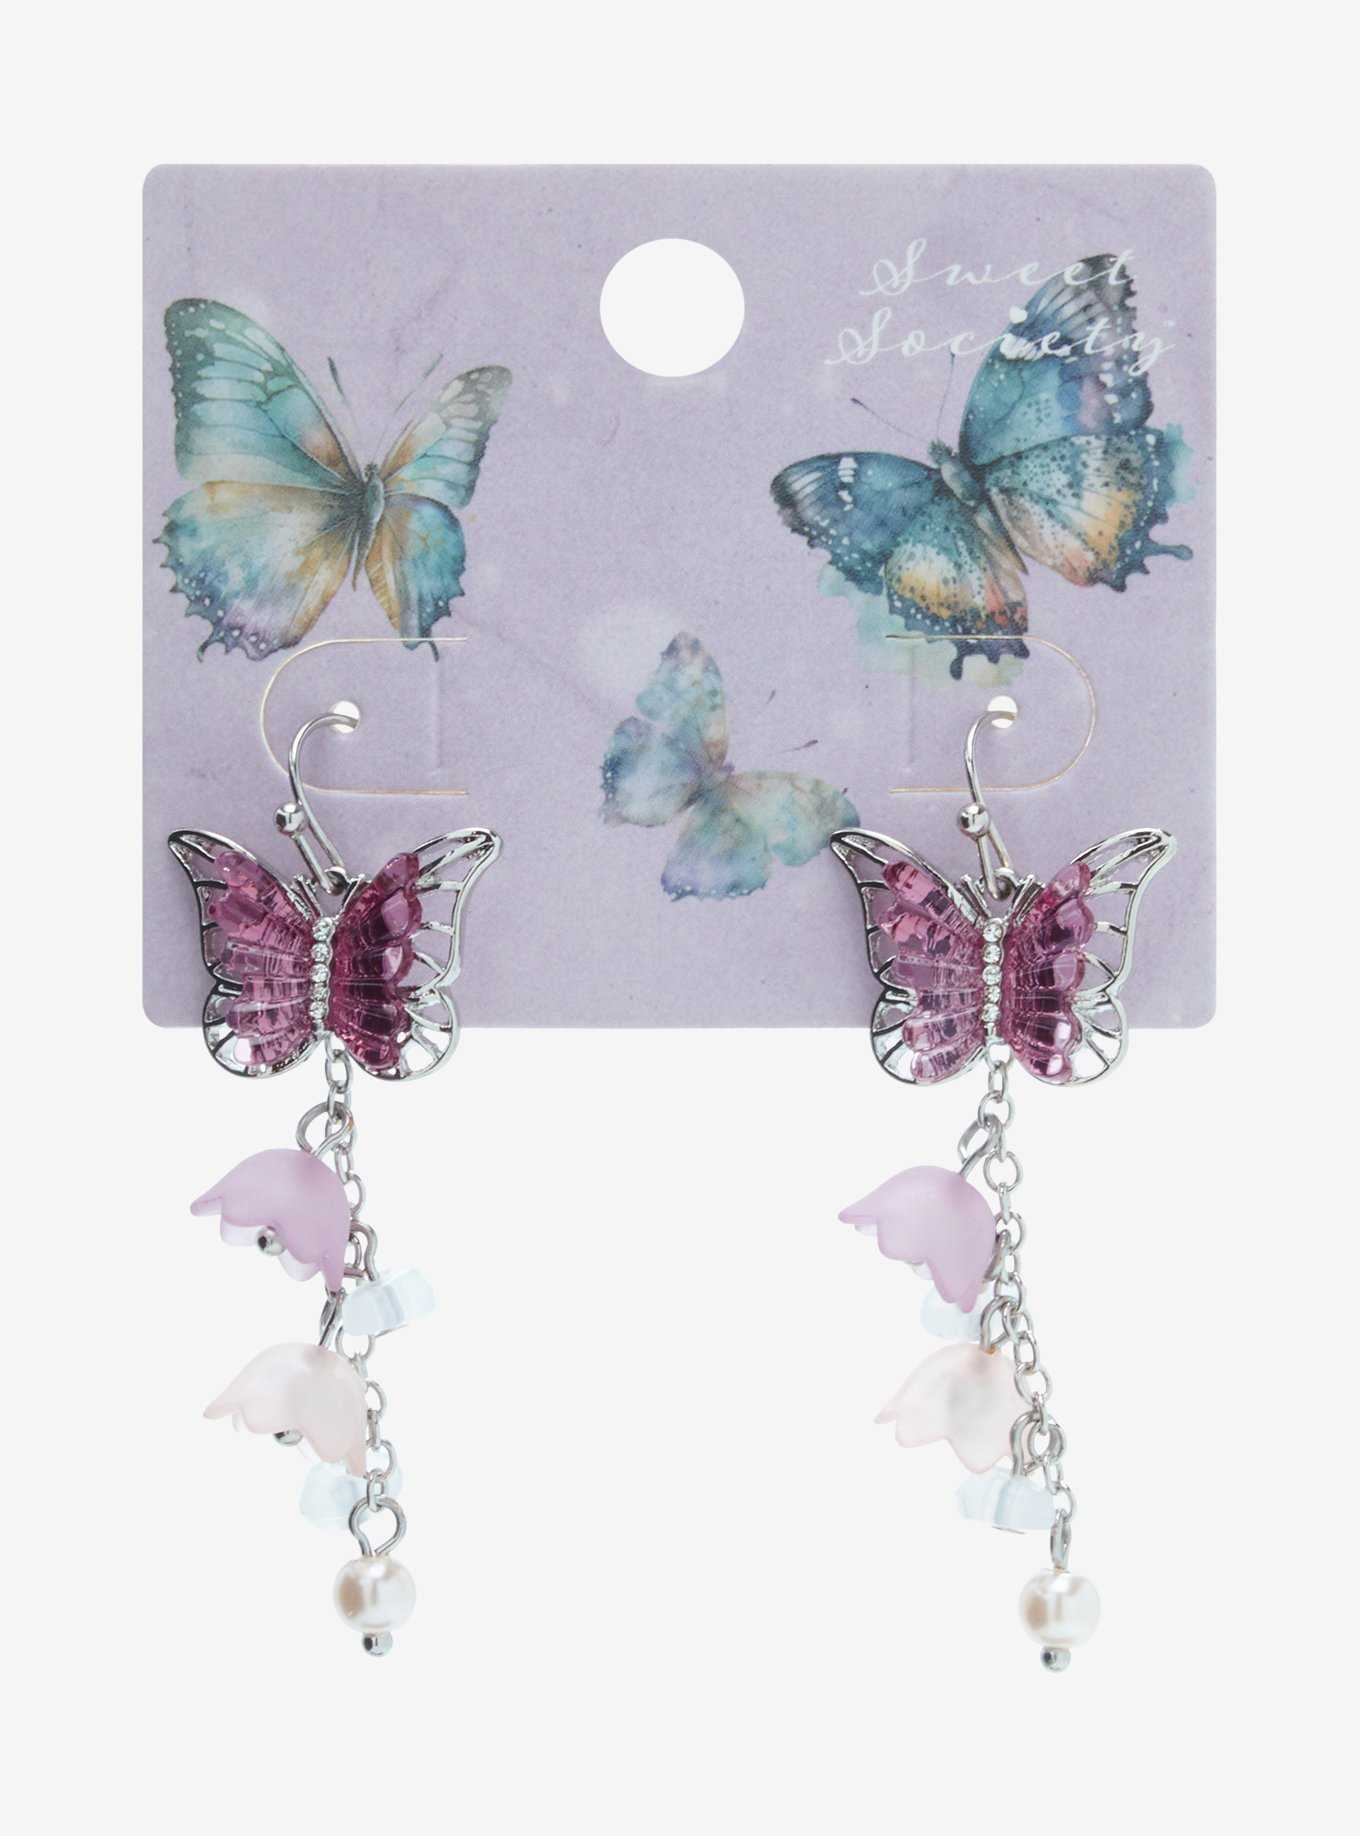 Sweet Society® Purple Butterfly Flower Drop Earrings, , hi-res